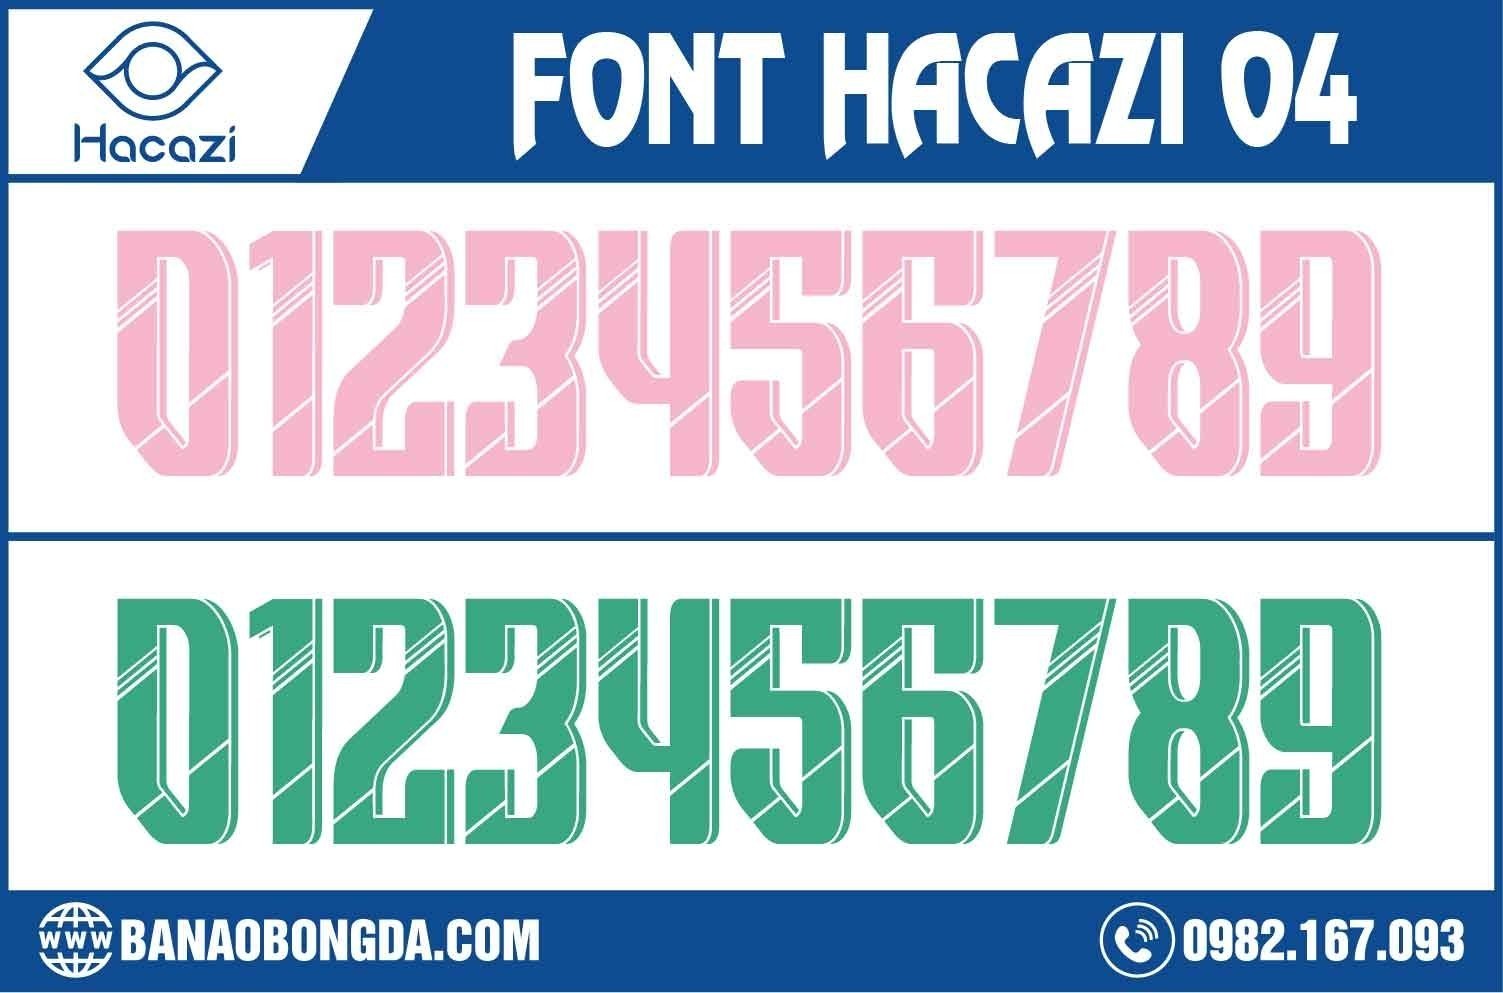 Sẽ thật tuyệt nếu như bạn bổ sung vào bộ sưu tập các mẫu font số áo bóng đá độc đáo của mình bộ font số áo bóng đá 04 này. Đây chính là một trong những bộ font số đẹp nhất có màu hồng nhạt và xanh ngọc mới được phát hành tại Shop Hacazi Sport.